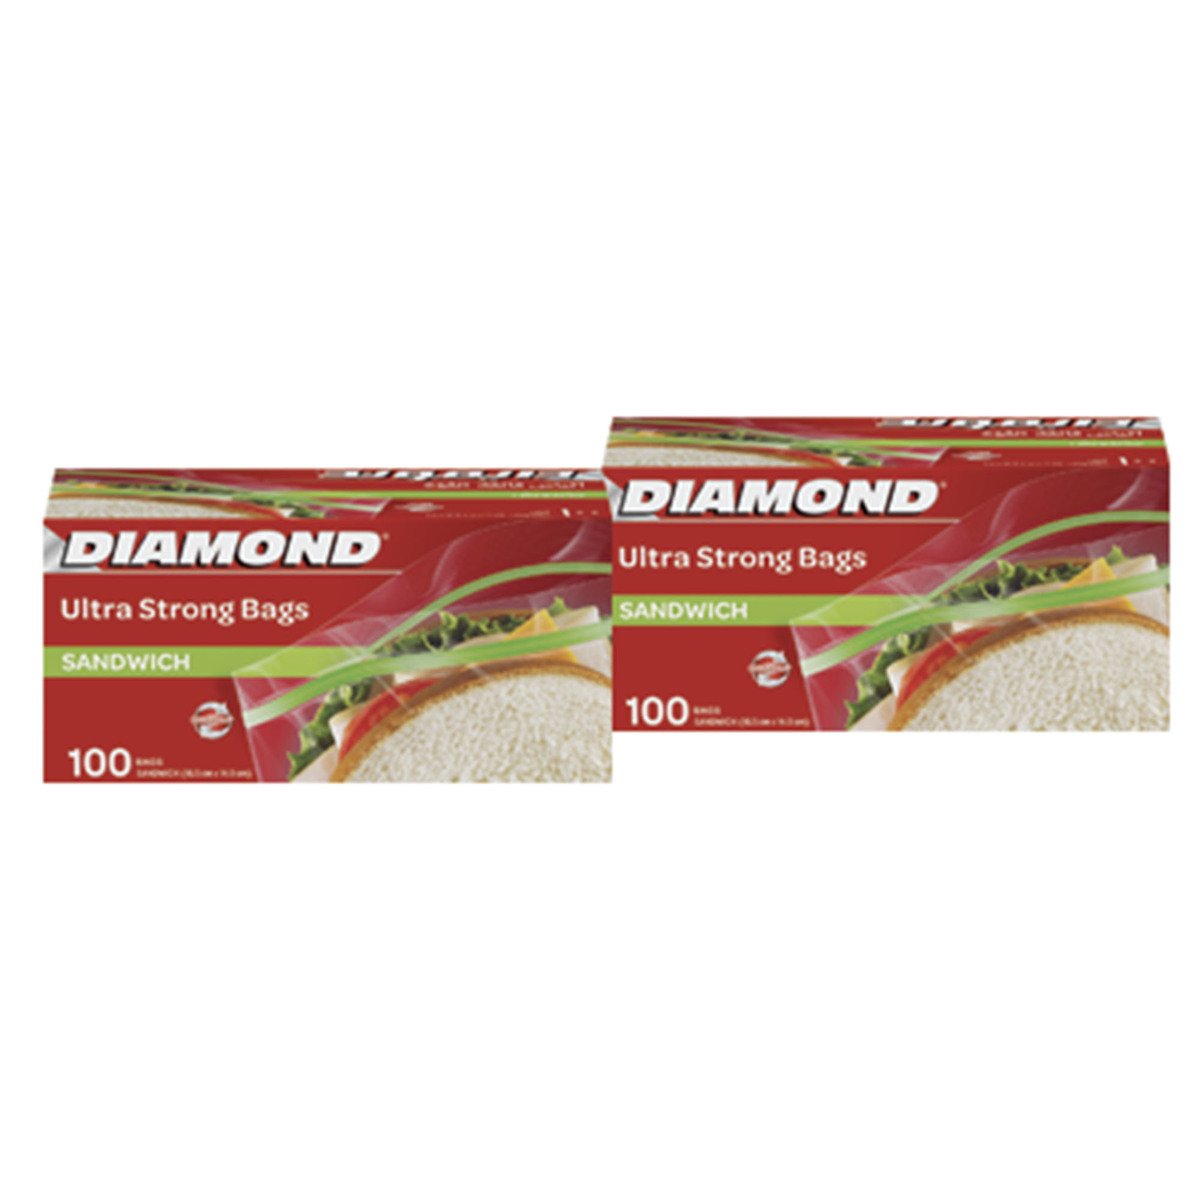 Buy Diamond Sandwich Bags Ultra Strong 2 x 100pcs Online at Best Price | Food Bags | Lulu UAE in UAE